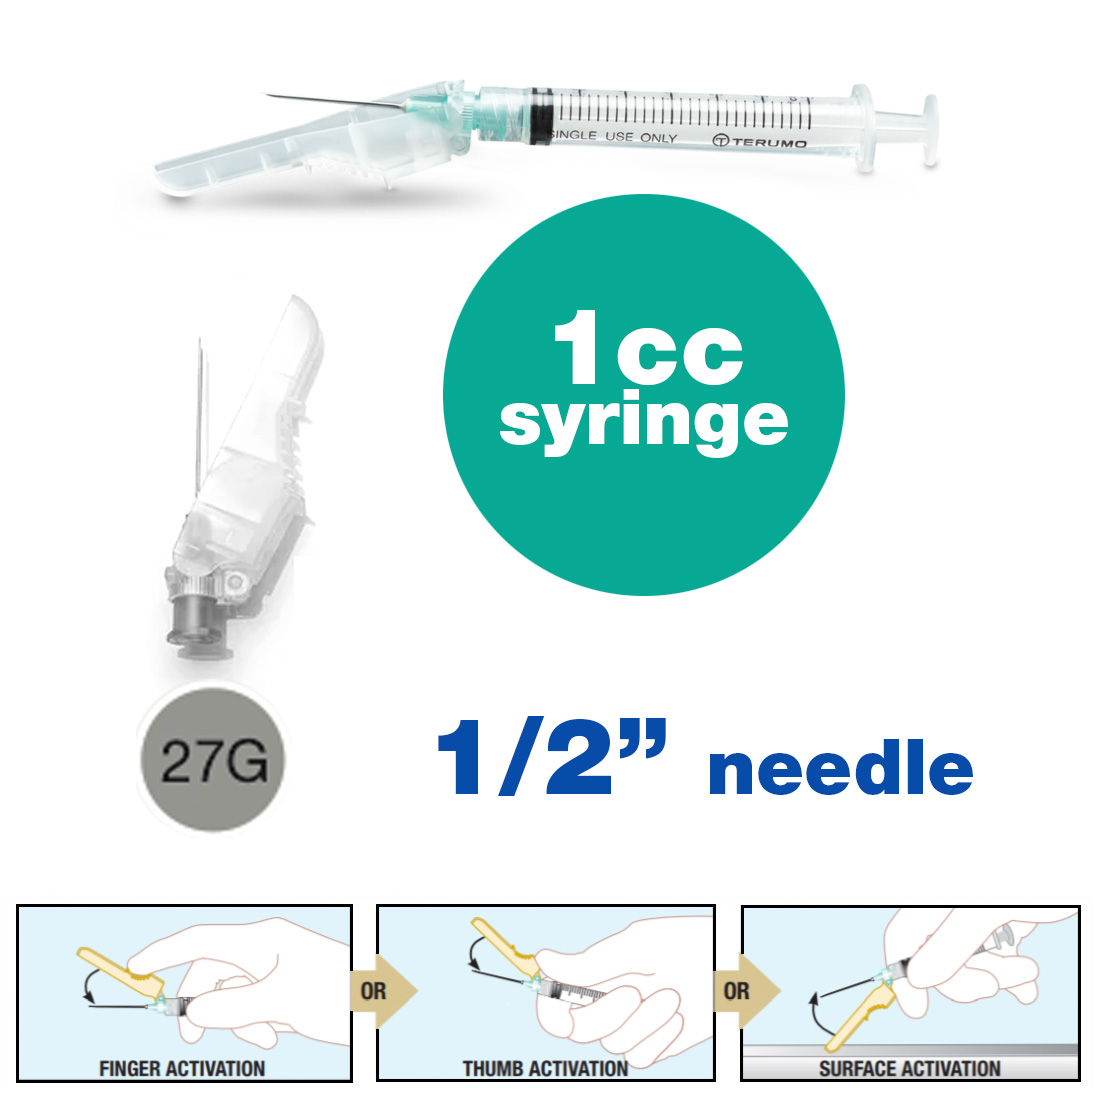 SurGuard® 3 Safety Hypodermic Needle, 1CC Syringe with 27G x 1/2" Needle - 100/Box